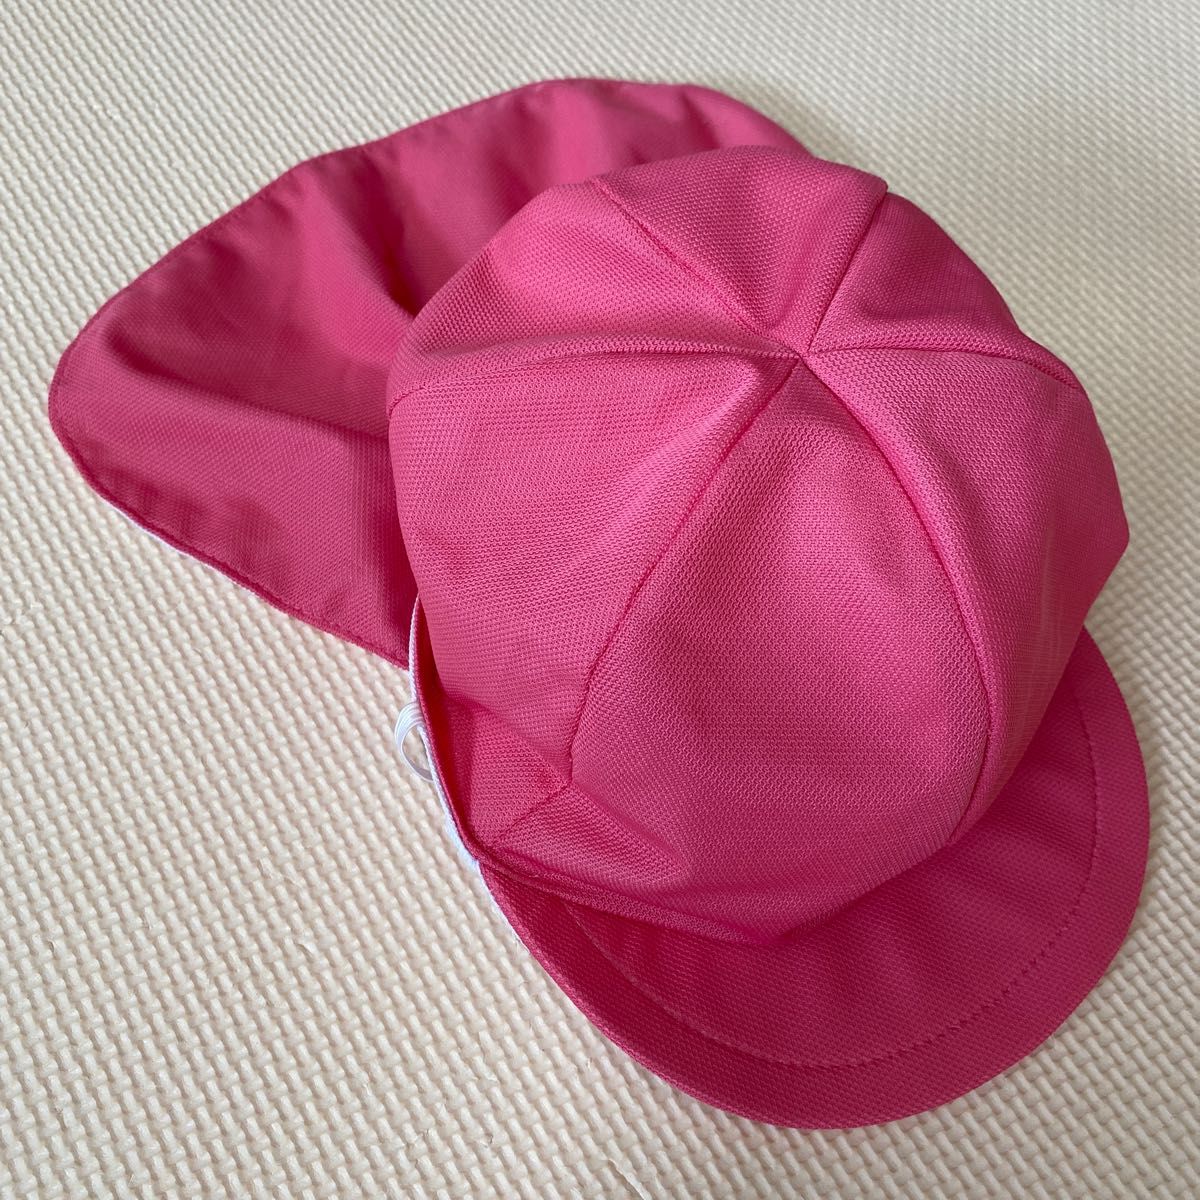 アウトレット品 保育士 幼稚園教諭 日よけ付 カラー帽子 先生用帽子 ピンク